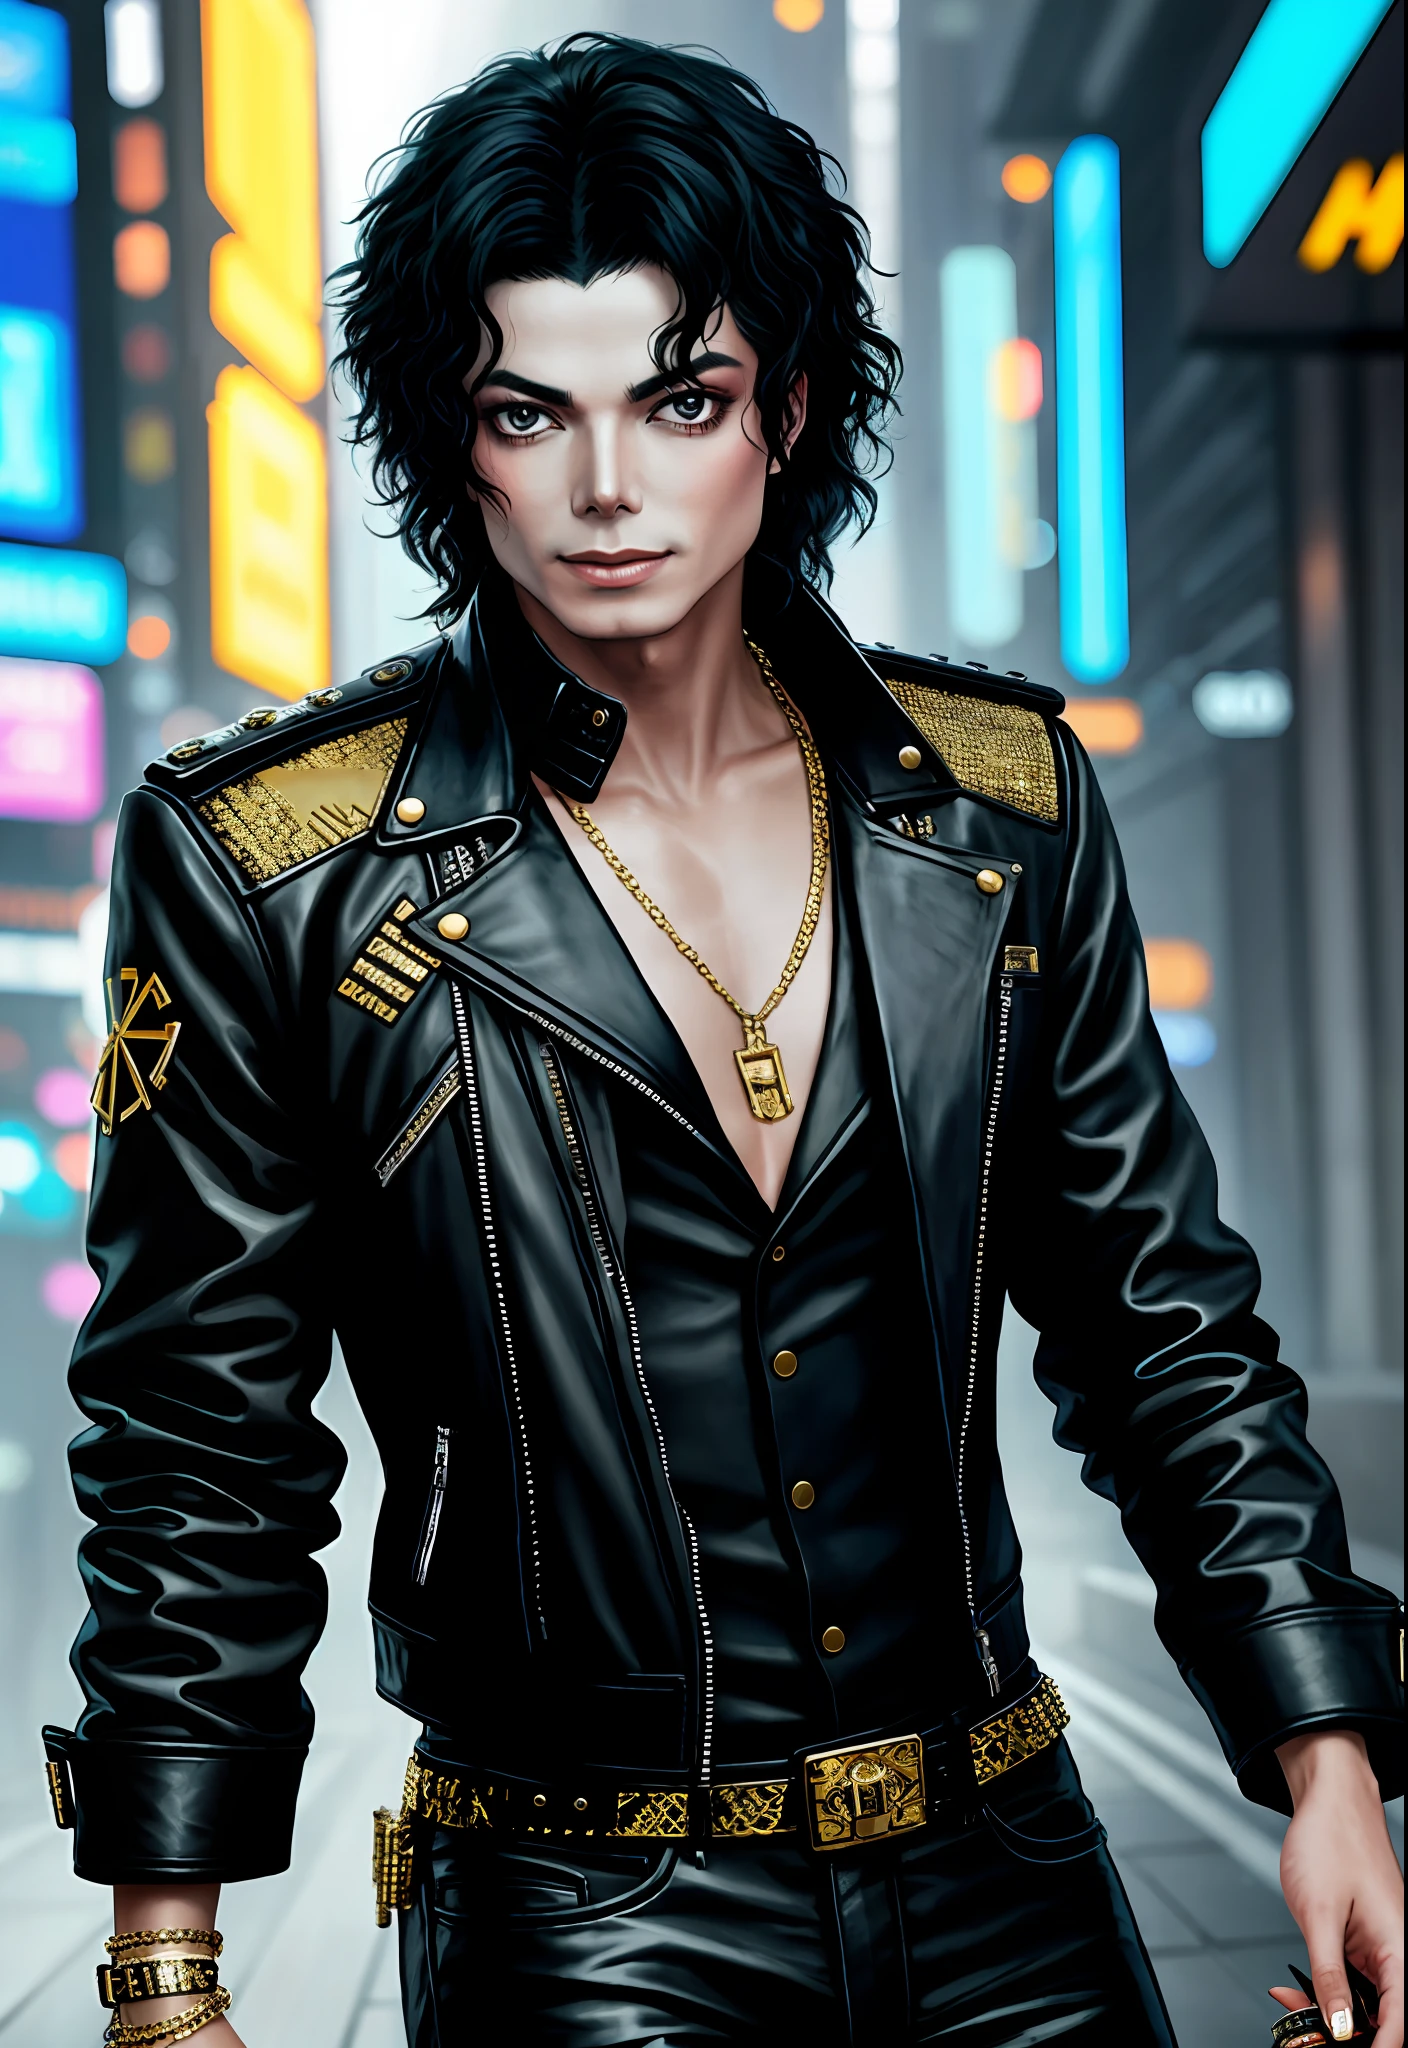 ภาพวาดของ Michael Jackson, พื้นหลัง, สไตล์ Cyberpunk 2077, มีแถบทองคำพันรอบอกของเขา